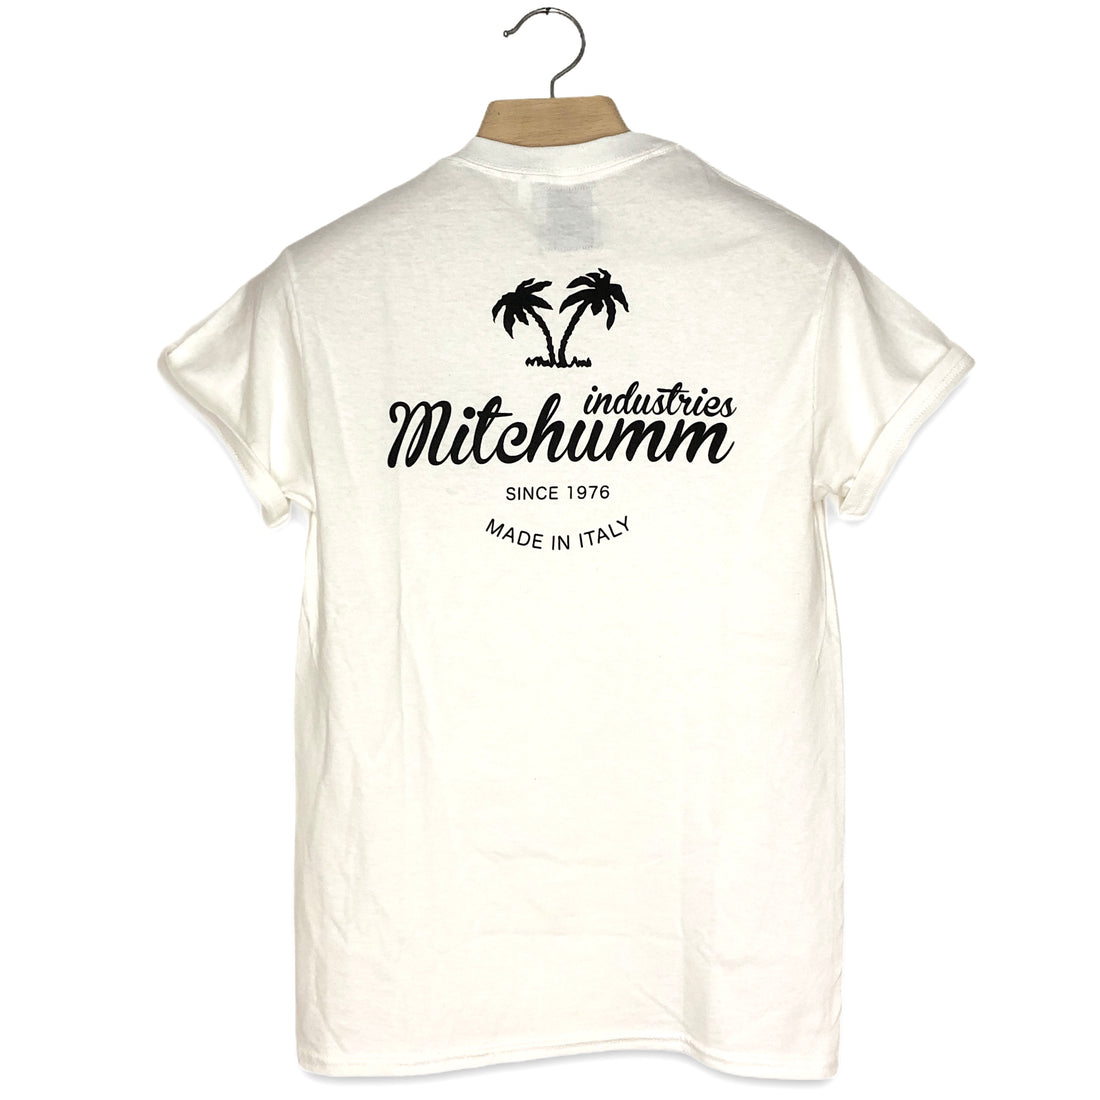 Mitchumm Logo tees - White